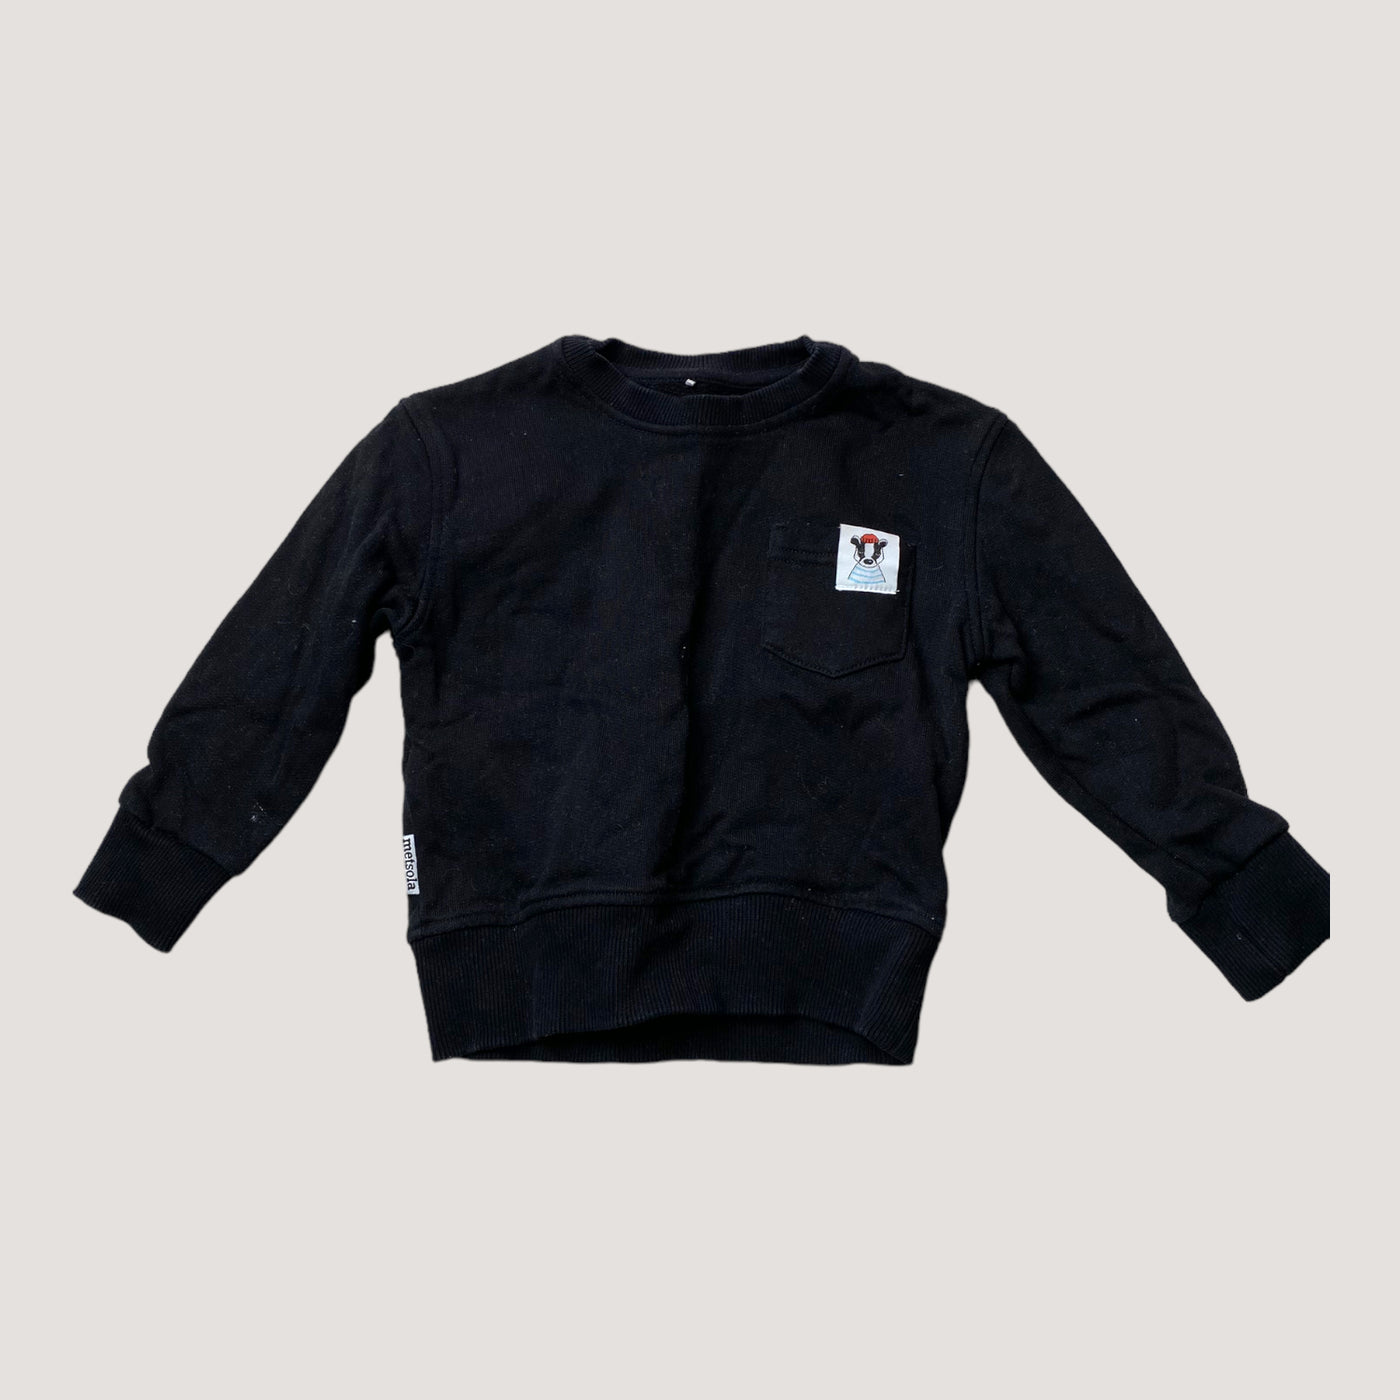 Metsola sweatshirt, black | 74/80cm